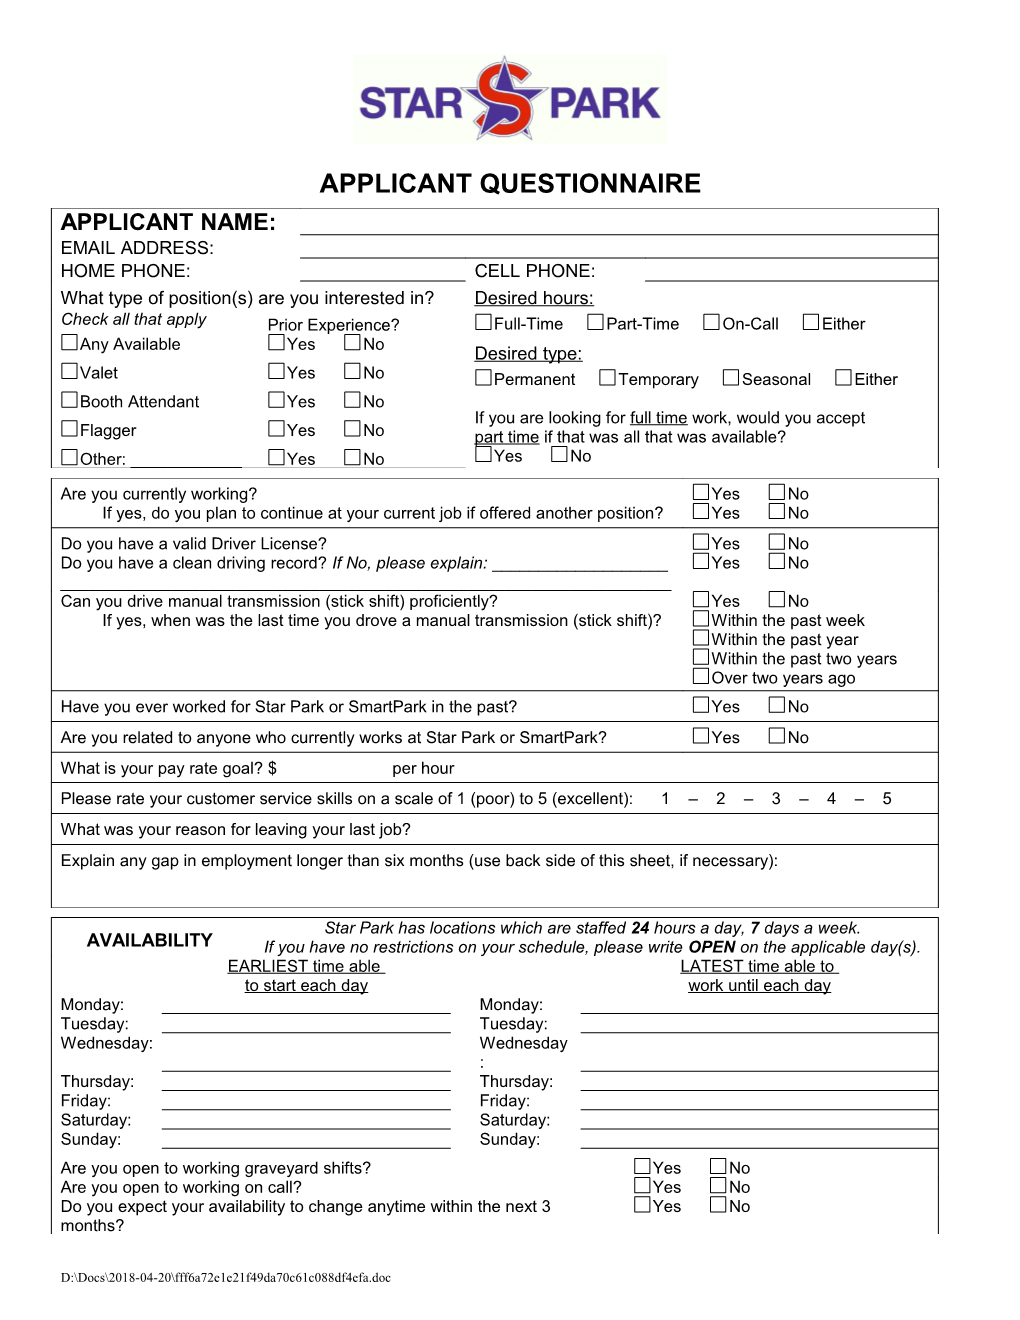 Applicant Questionnaire